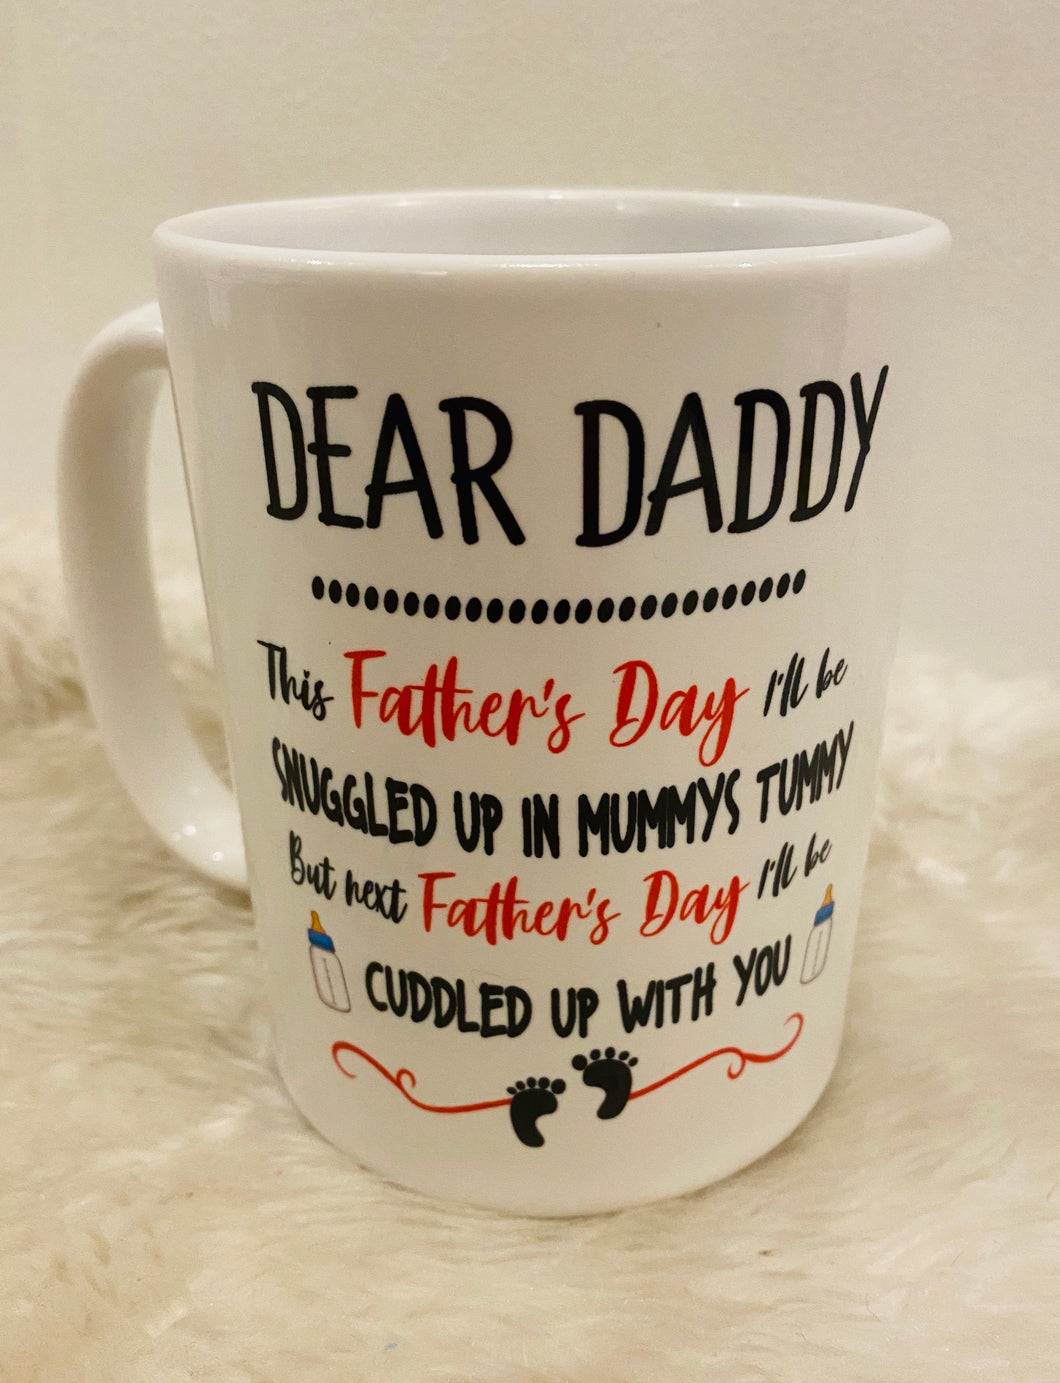 Dear daddy coffee mug